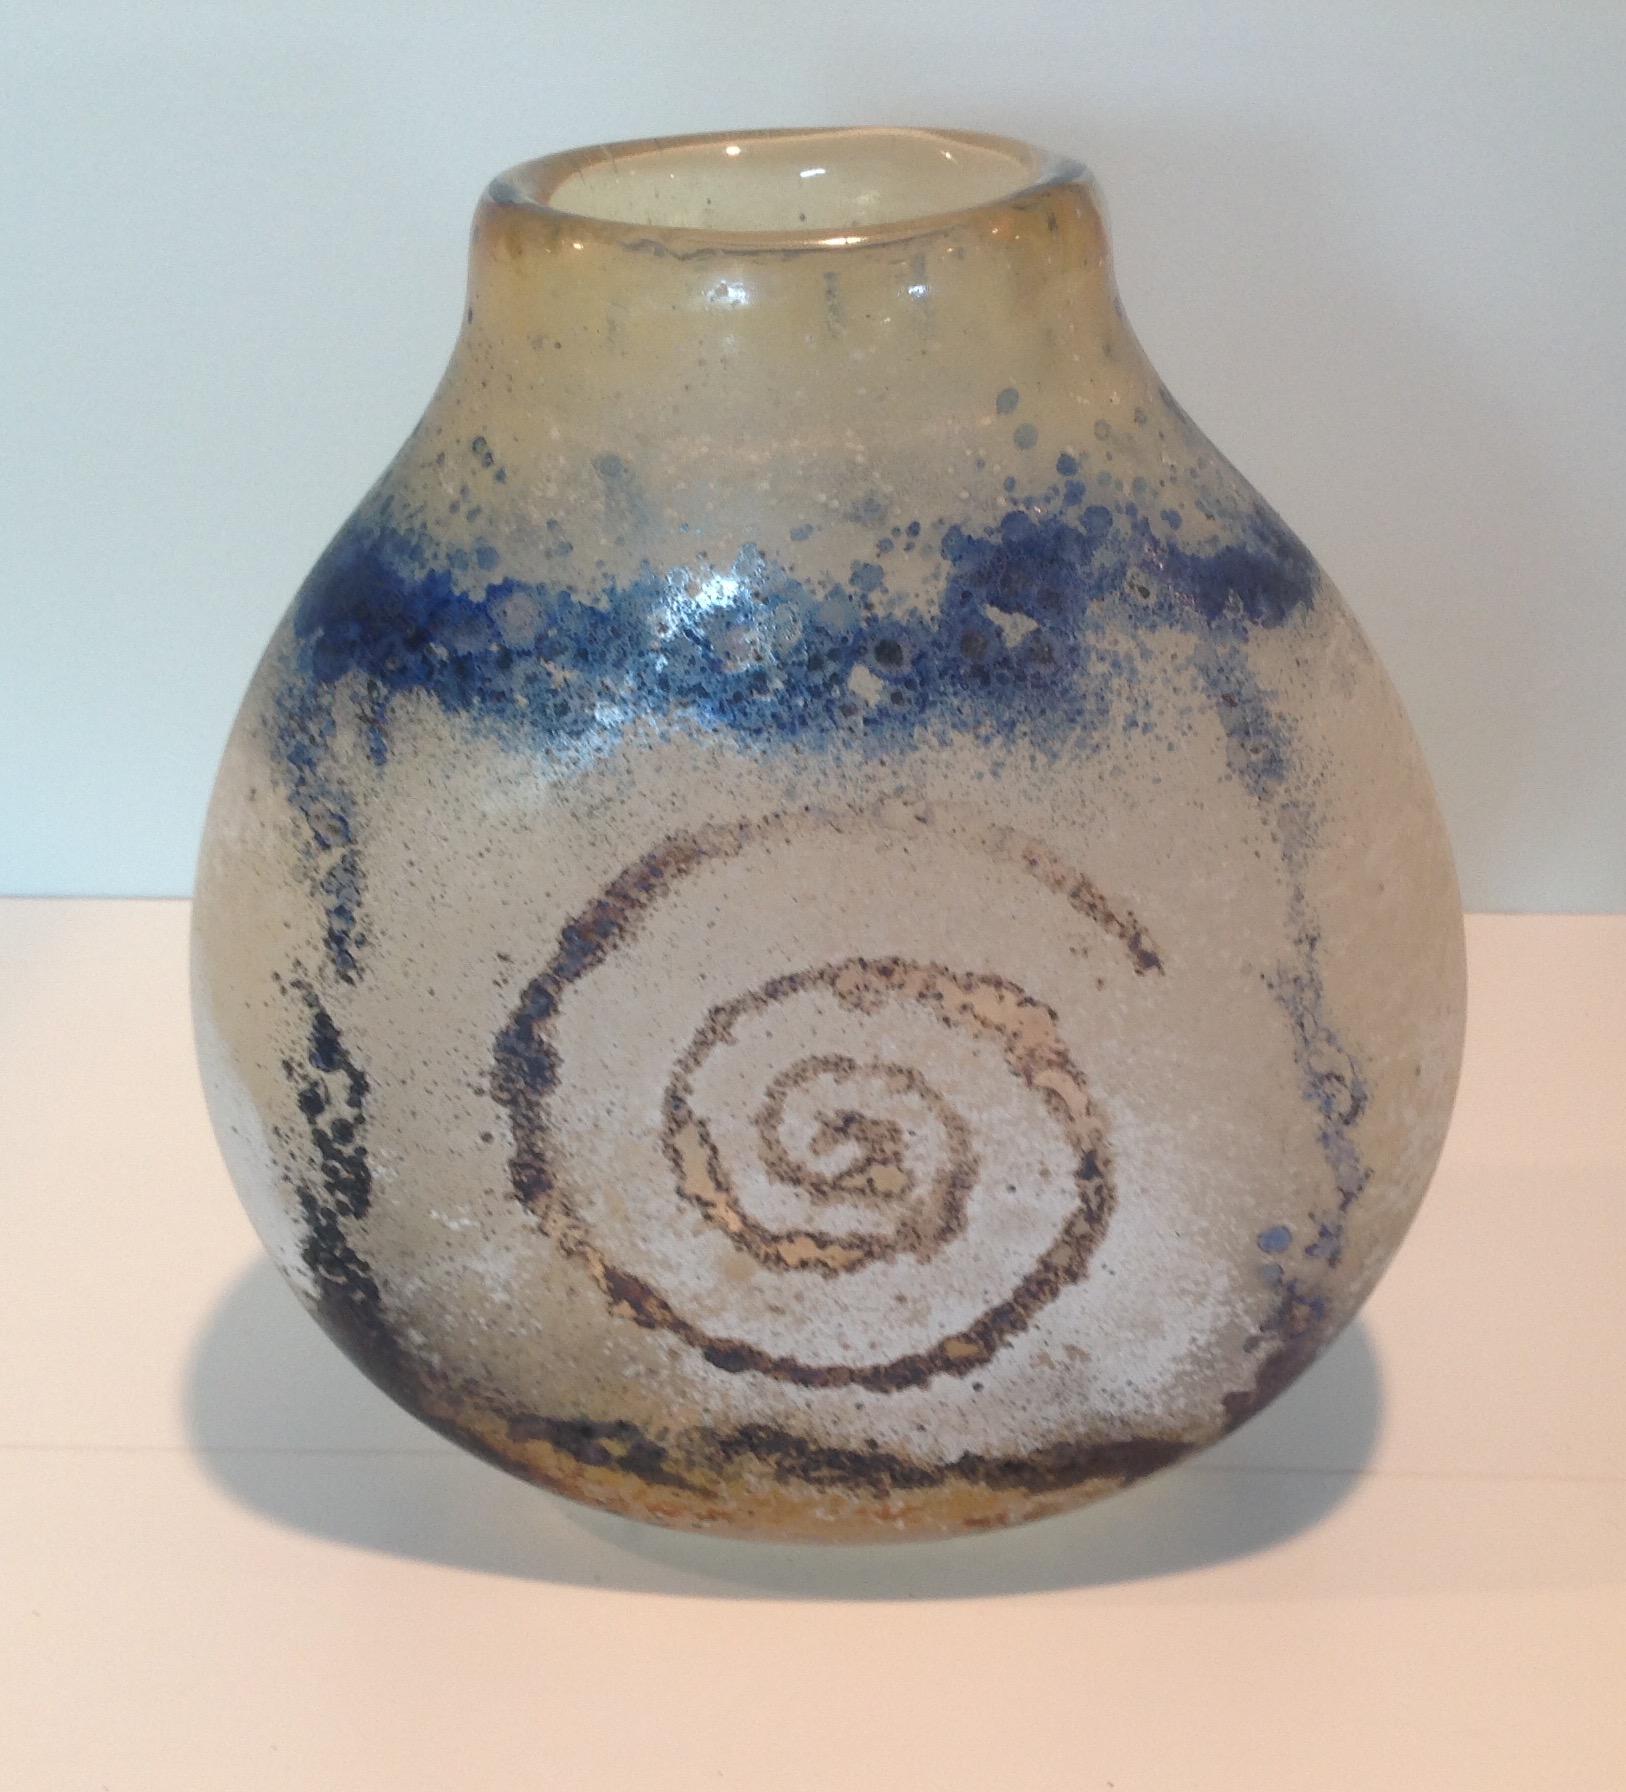 Amazing spiral decorated scavo vase by Seguso Viro. Une décoration et un travail étonnants. Je n'en ai pas vu de comparable sur le marché.

Seguso Viro crée sur l'île de Murano à Venise, en Italie, où le verre vénitien est fabriqué depuis des